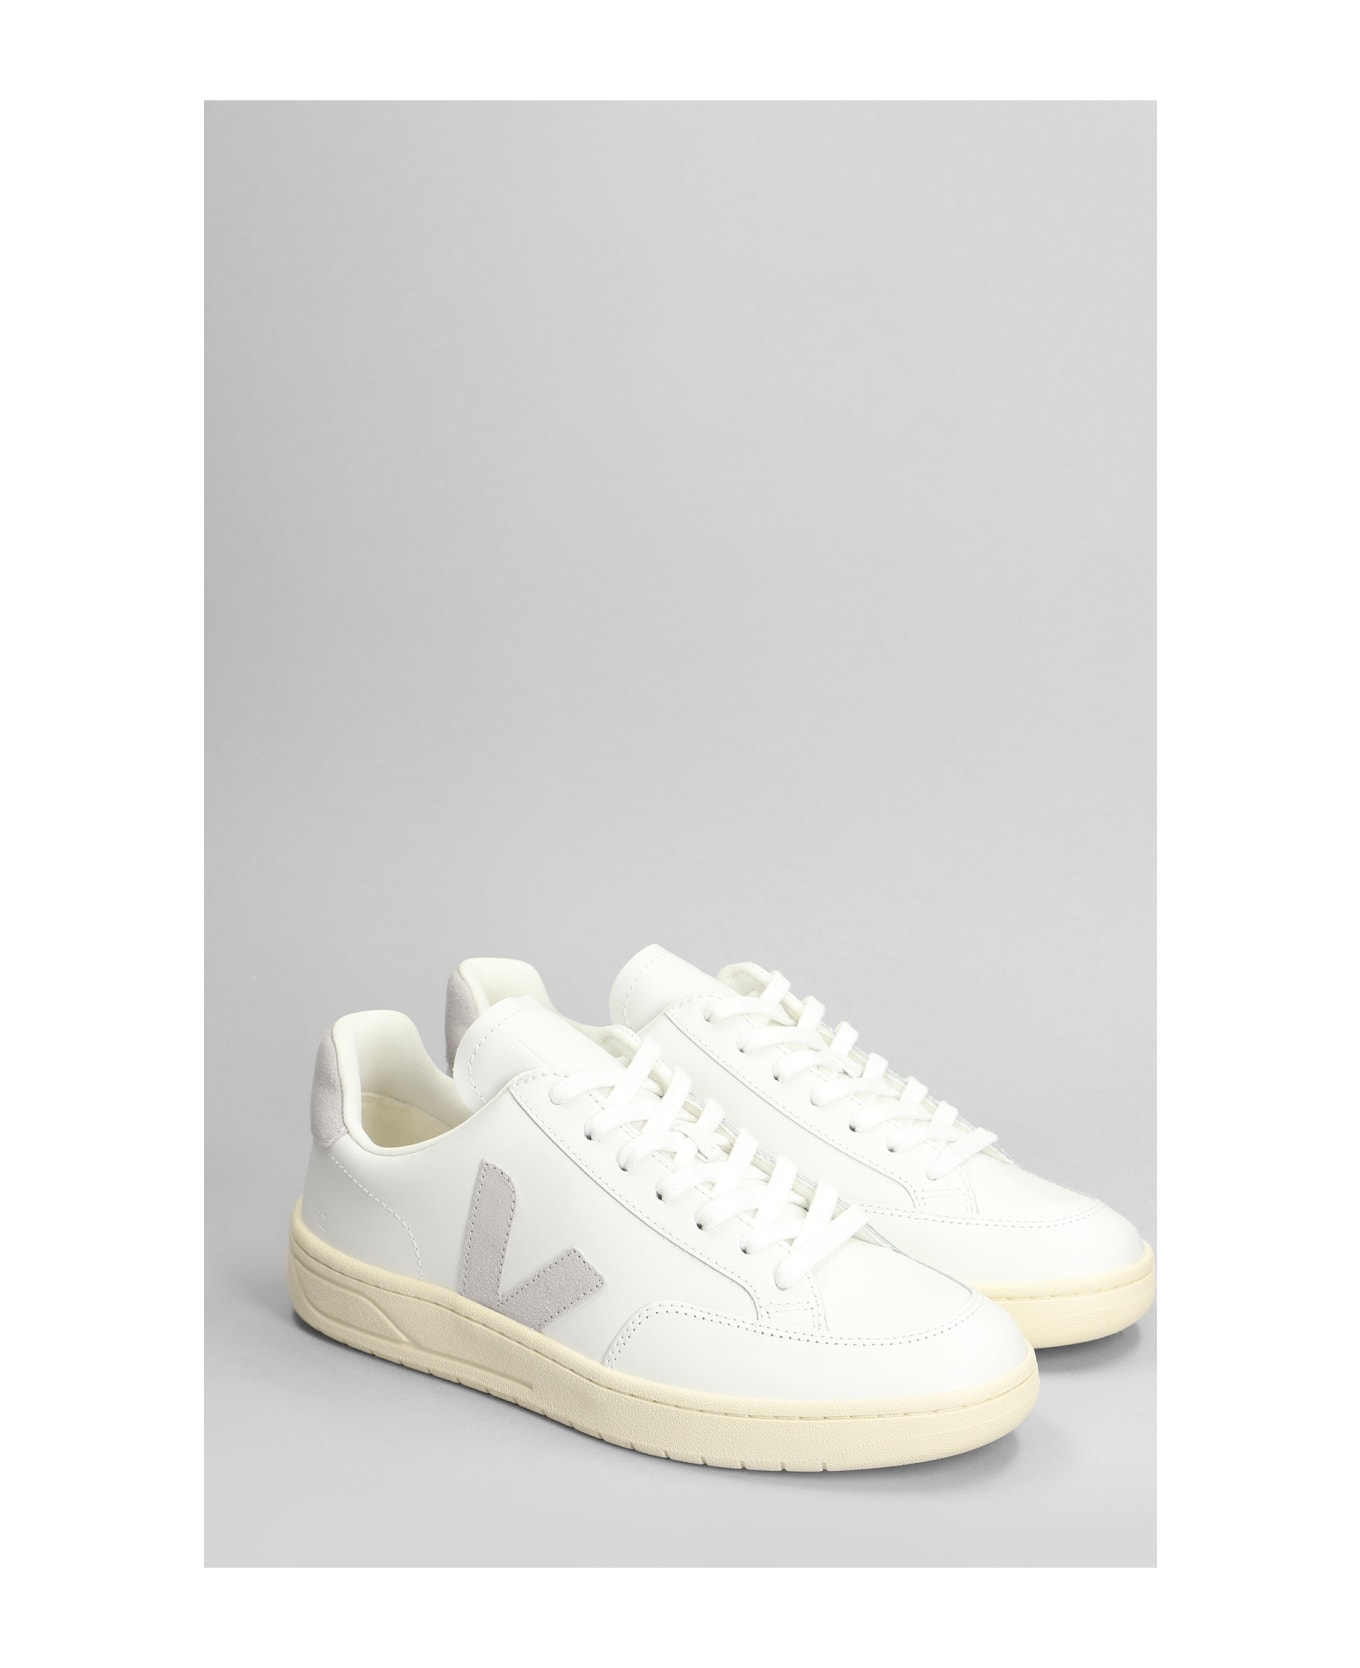 Veja V-12 Sneakers In White Leather - white スニーカー